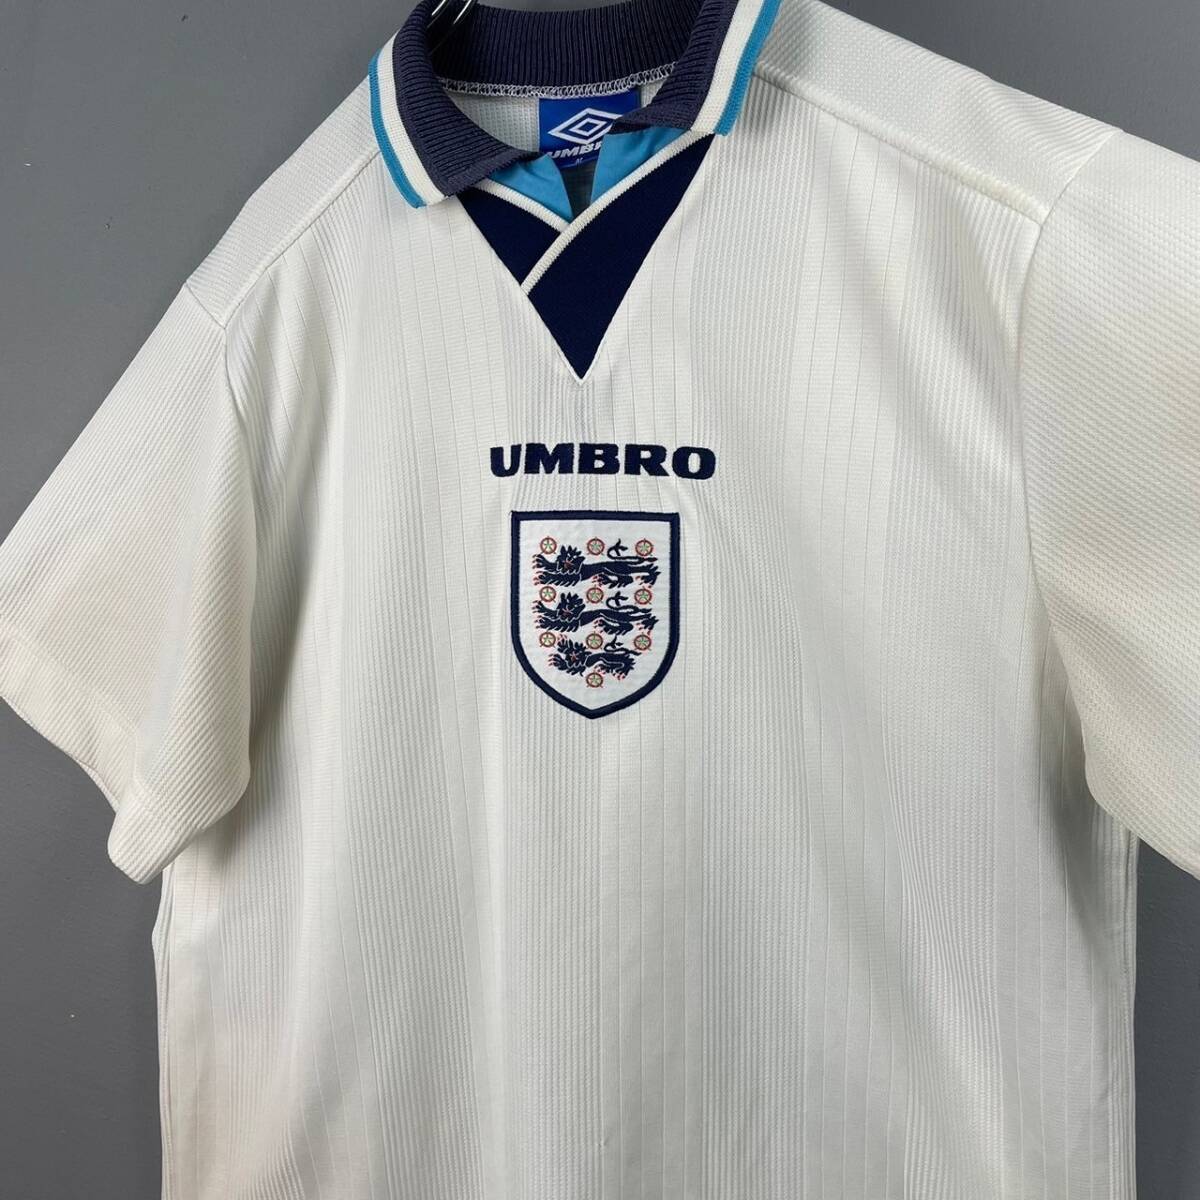 Wm559 UMBRO アンブロ サッカー 1996 96 イングランド代表 ENGLAND ホーム ユニフォーム ビンテージ ヴィンテージ_画像4